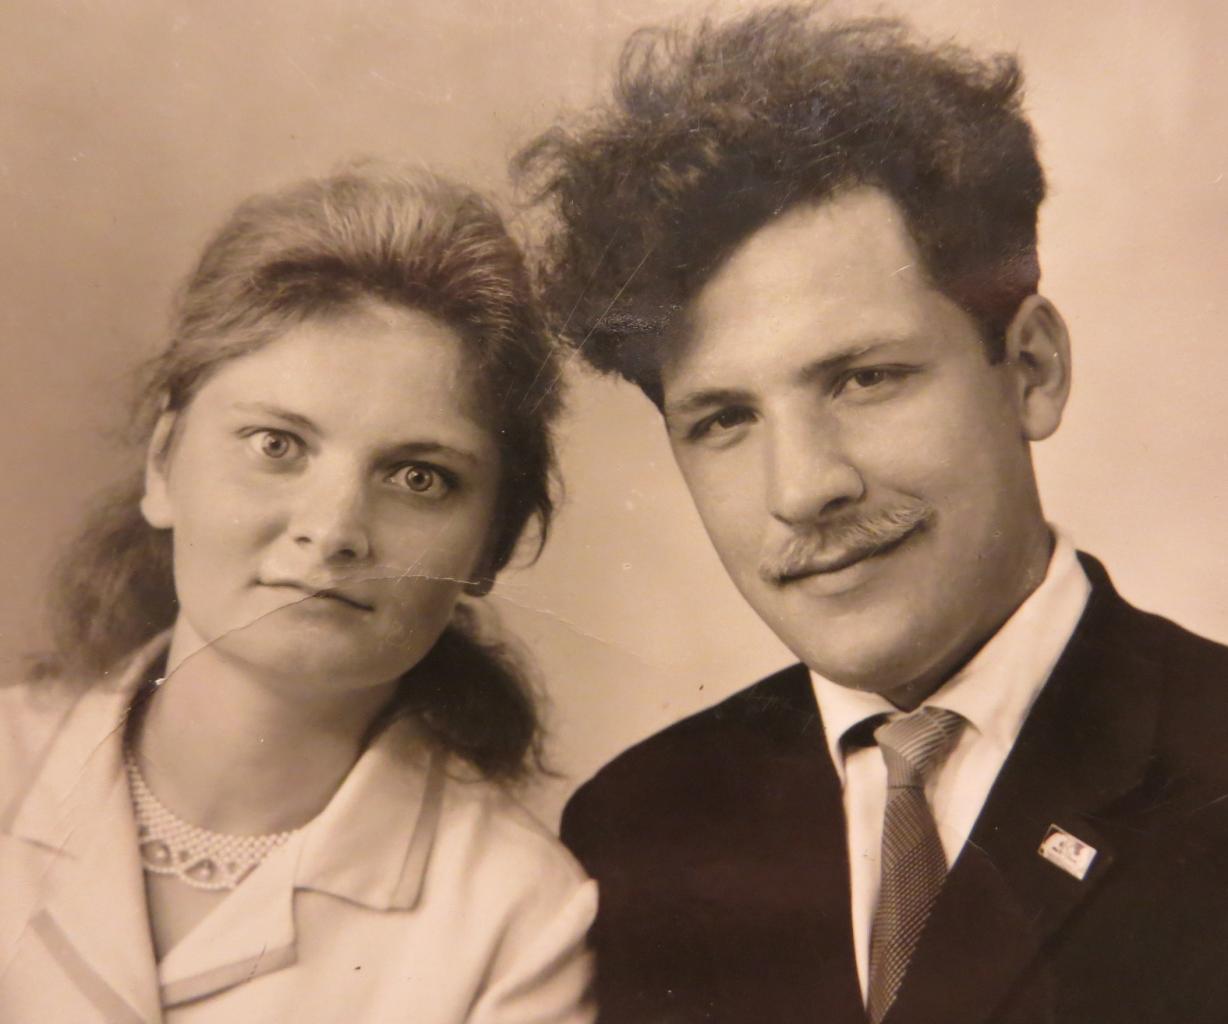 Виктор Пулькин и Неонила Криничная в день свадьбы. Фото Н.П.Филатовой, 1967(?) г.